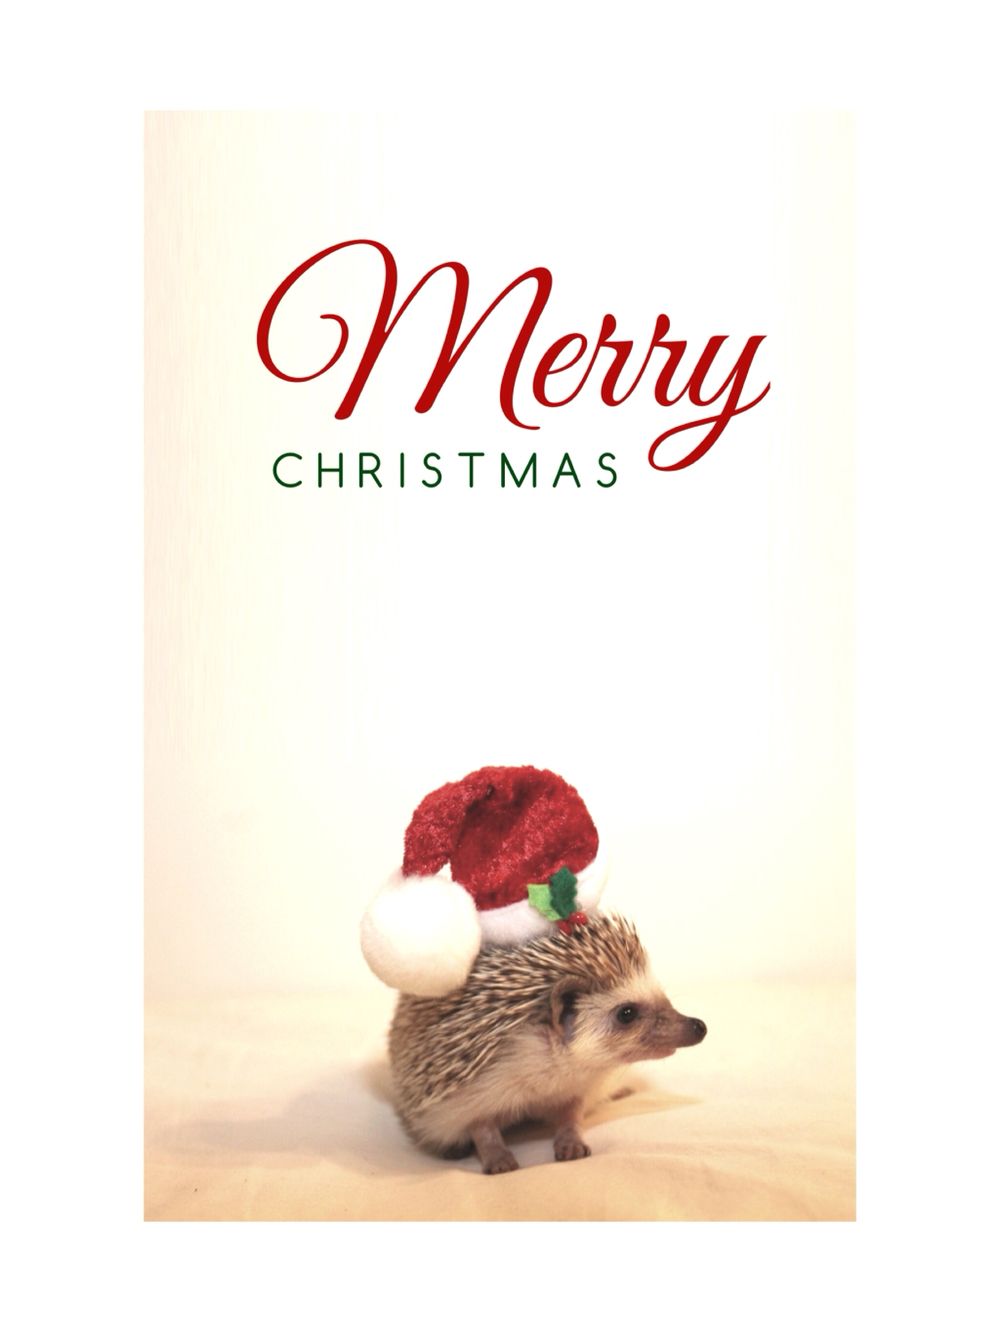 Hedgehog Christmas wallpaper. Hedgehog christmas, Christmas wallpaper, Merry christmas